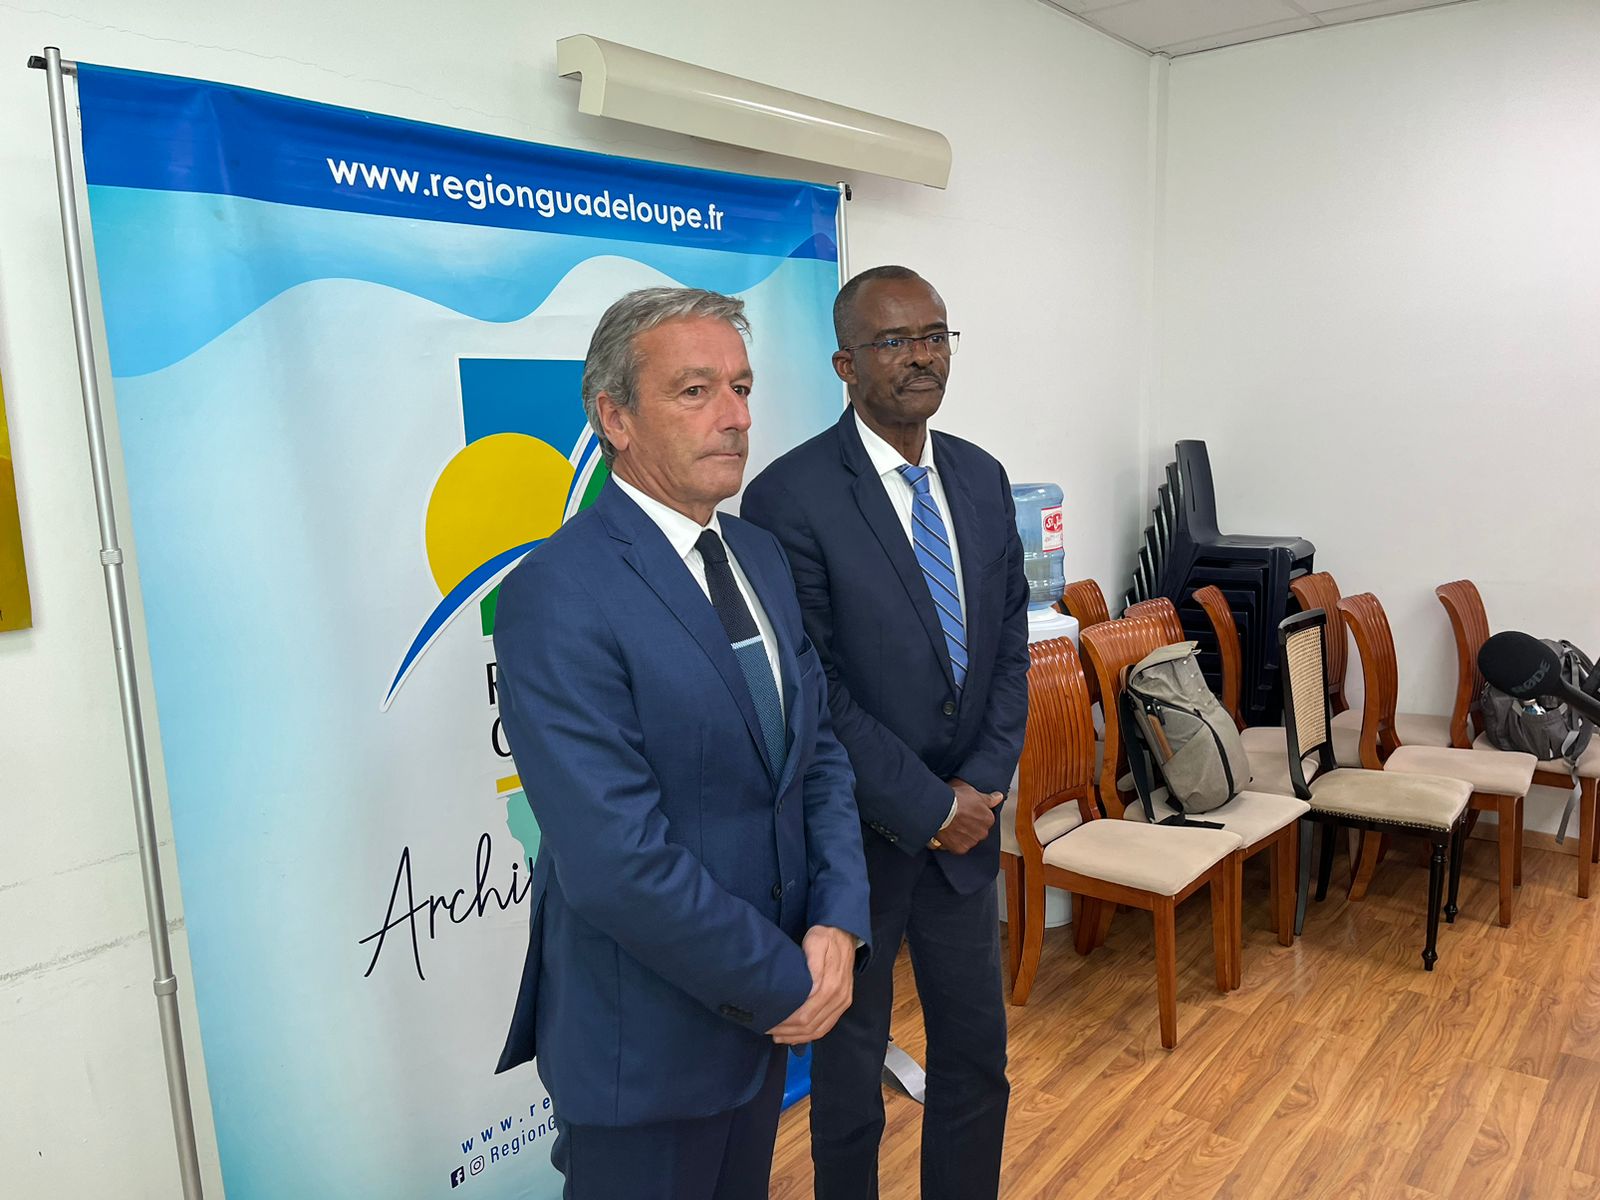     Visite ministérielle : rencontre entre Philippe Vigier et Ary Chalus

